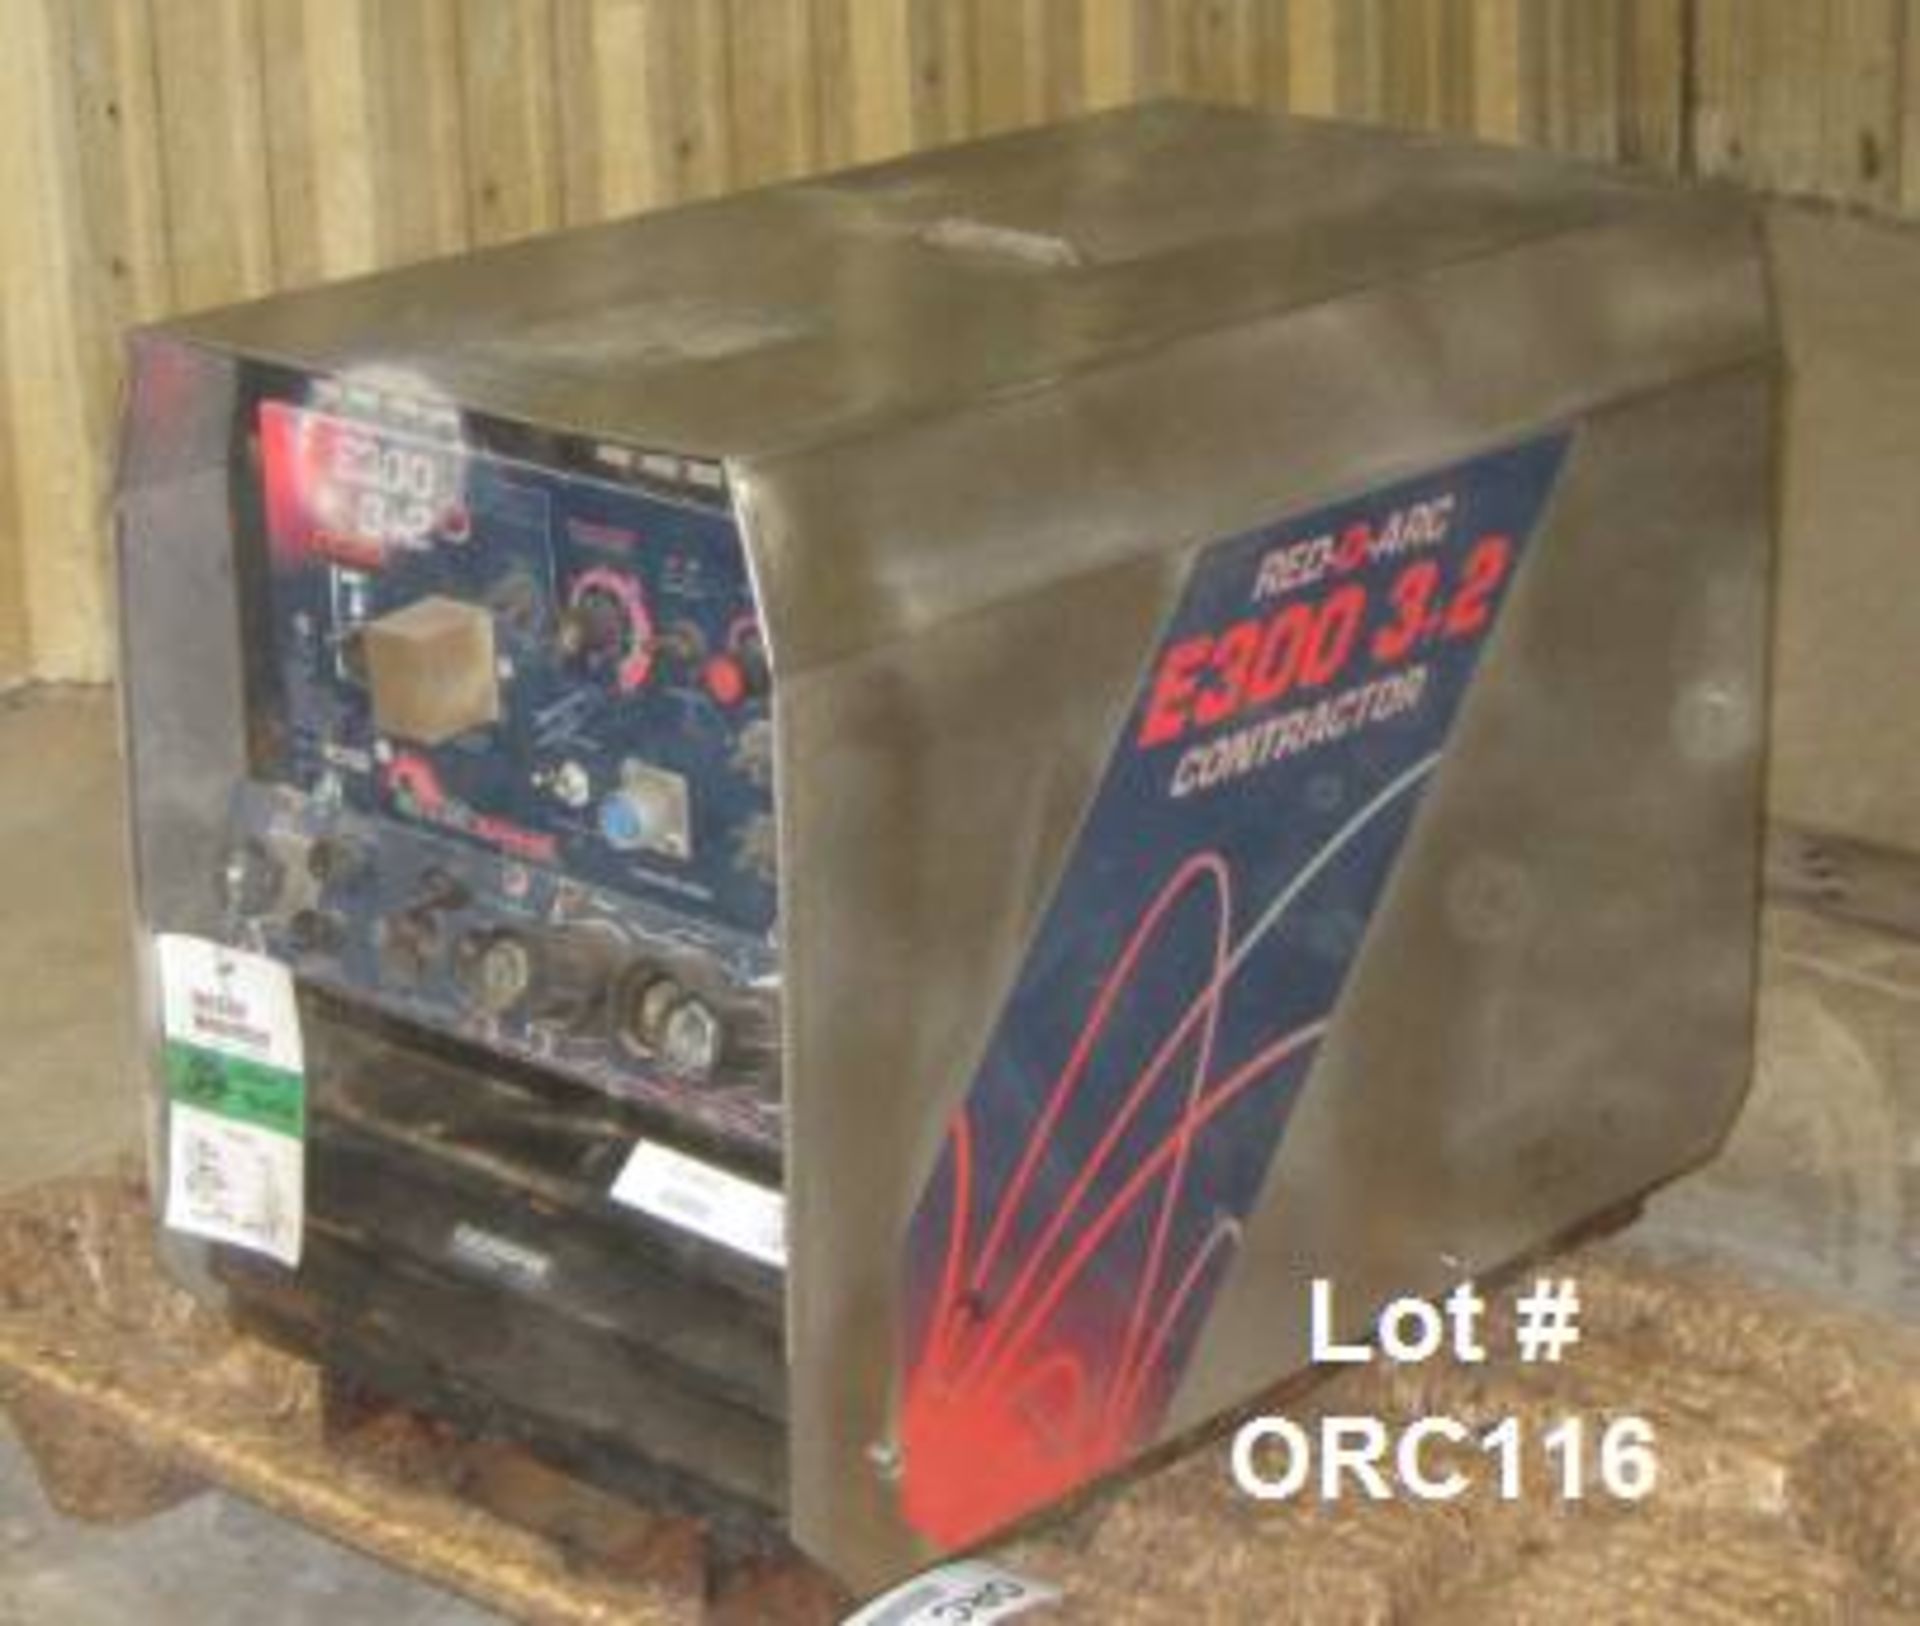 2001 RED-D-ARC RE3003+2 E300 3+2 cc/cv electric welder